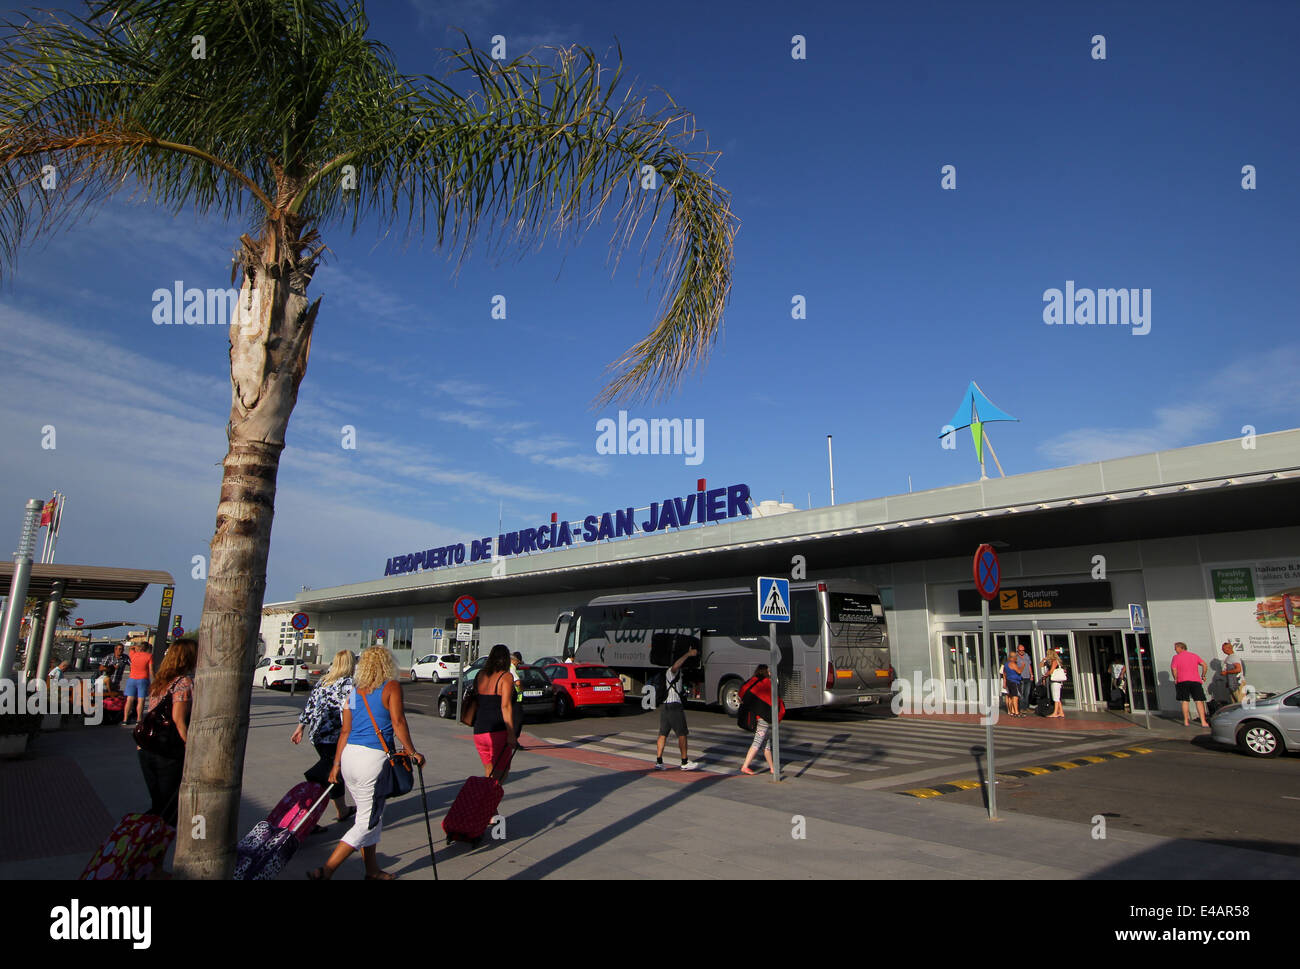 Murcia San Javier Airport, Murcia, southern Spain. Stock Photo